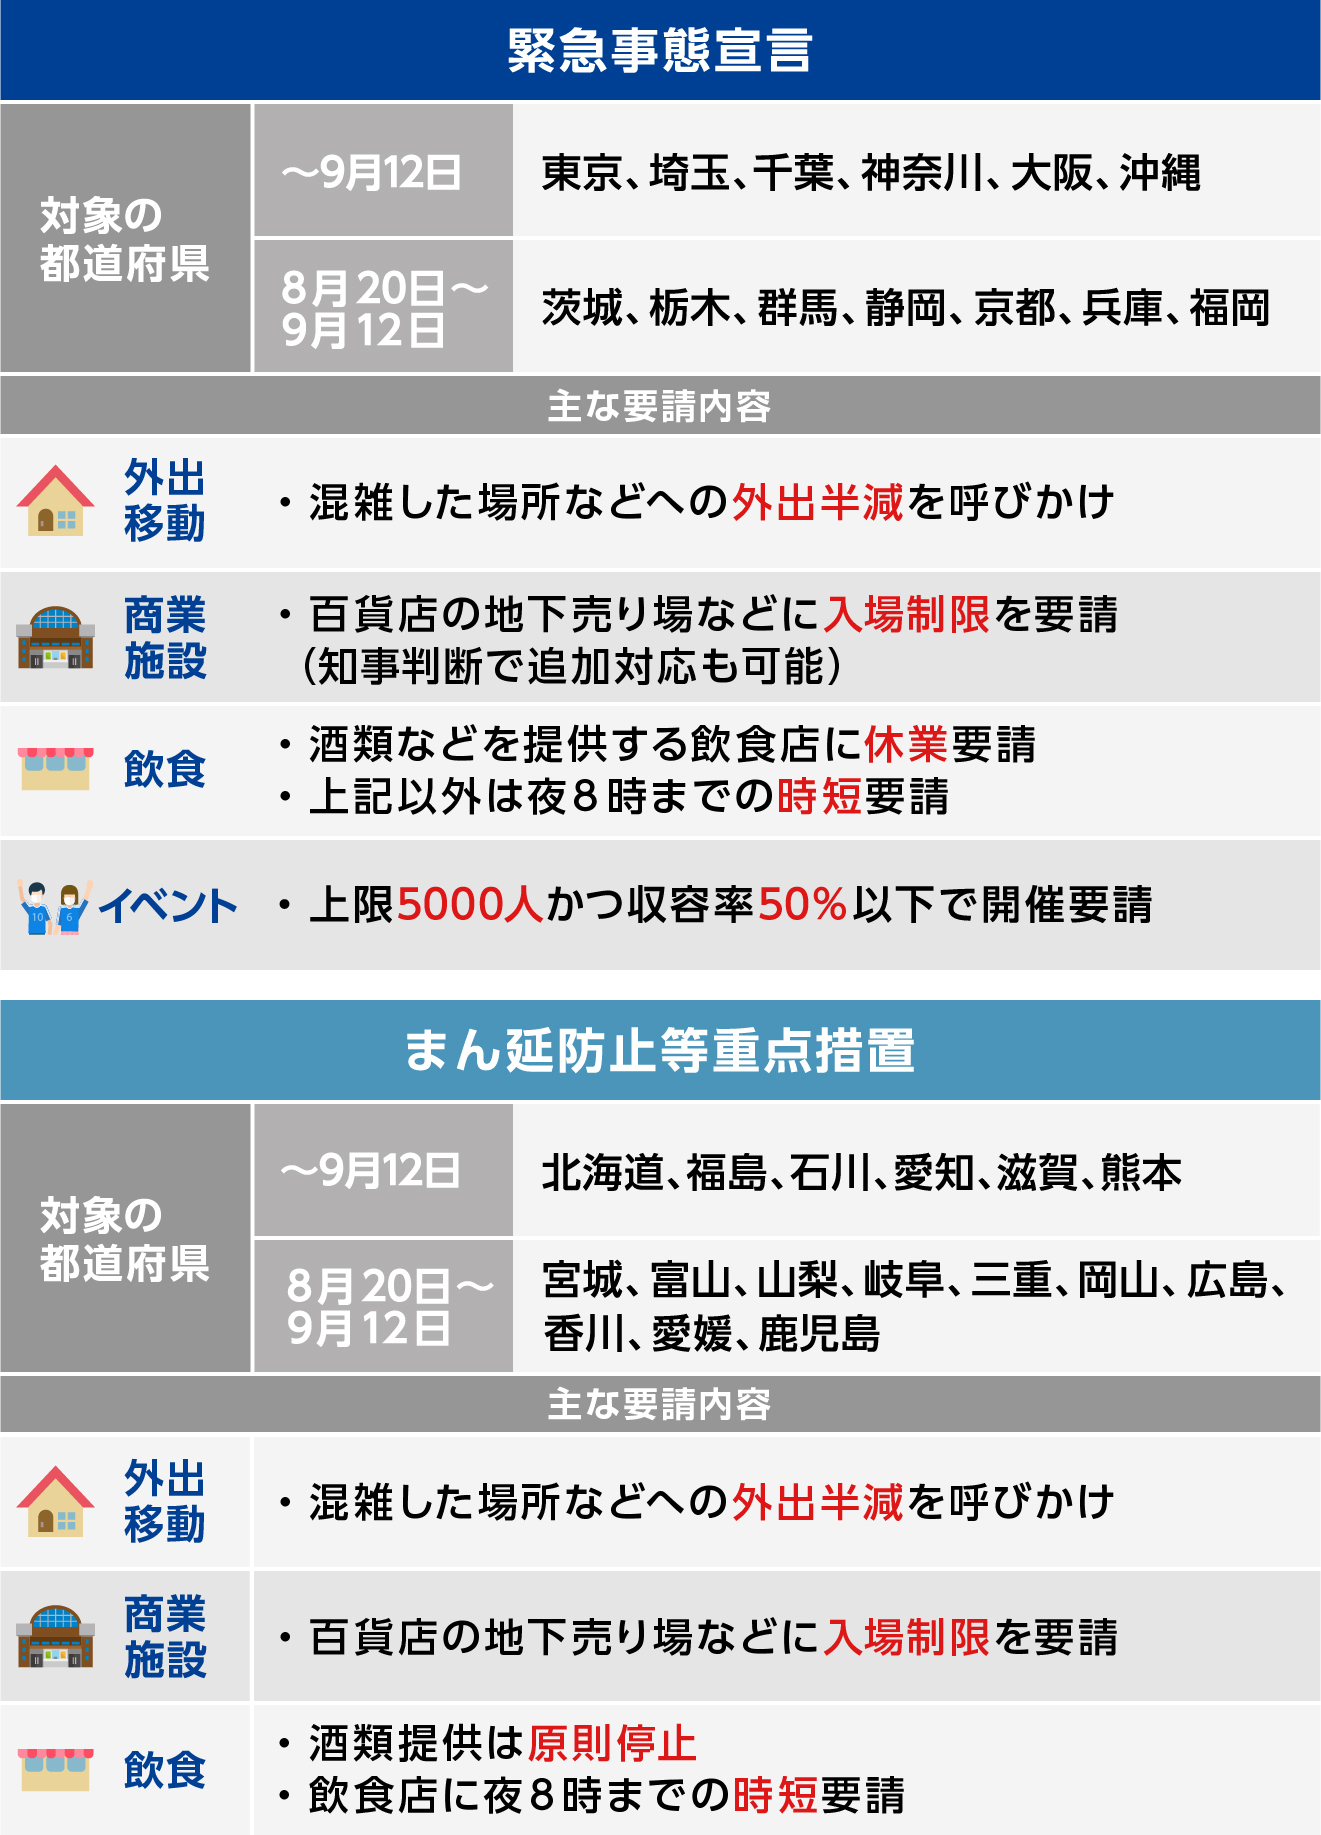 【速報】愛知県、岐阜県、三重県、北海道に緊急事態宣言発令 ...